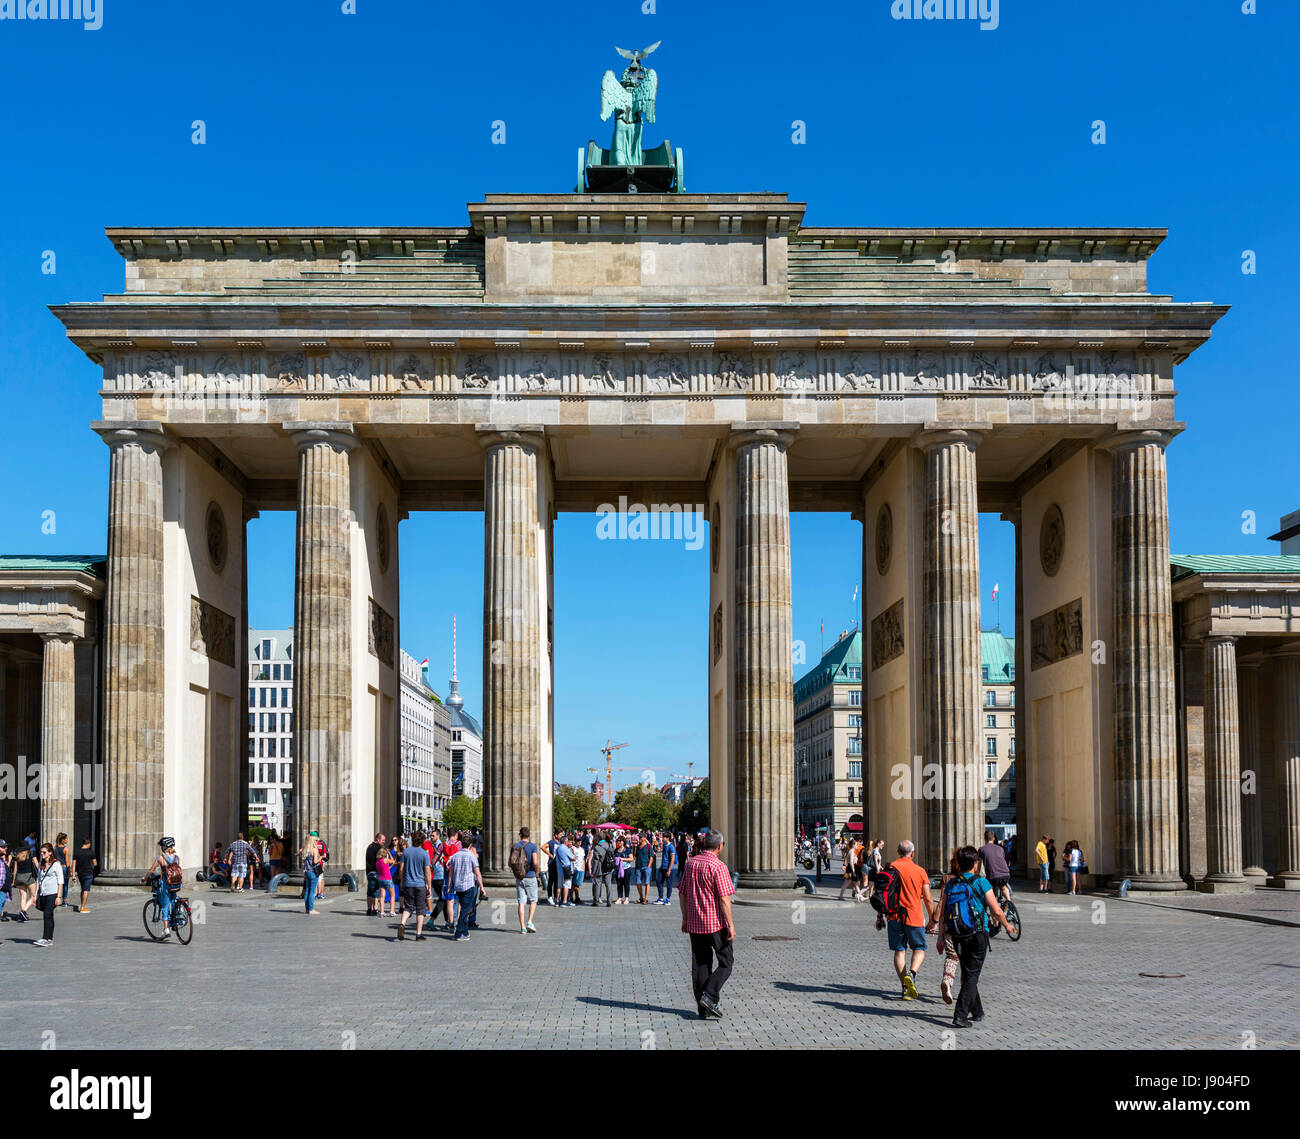 The Brandenburg Gate (Brandenburger Tor) from the Platz des 18 MÃ¤rz looking towards the Unter den Linden, Mitte, Berlin, Germany Stock Photo